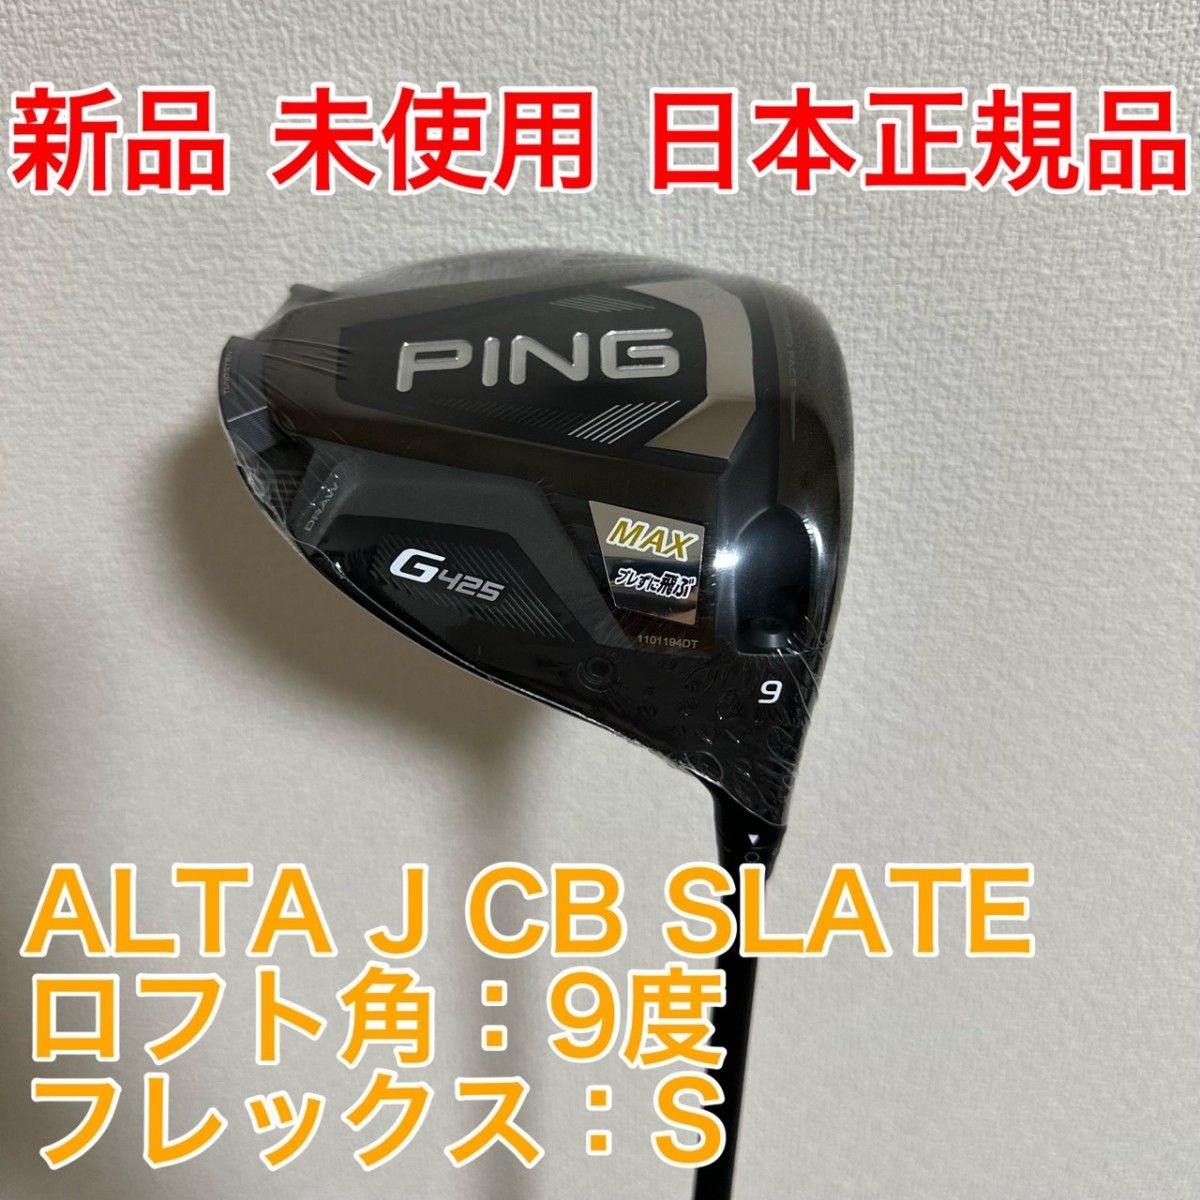 【残り1点】新品 未使用 PING G425 MAX ドライバー ALTA J CB SLATE